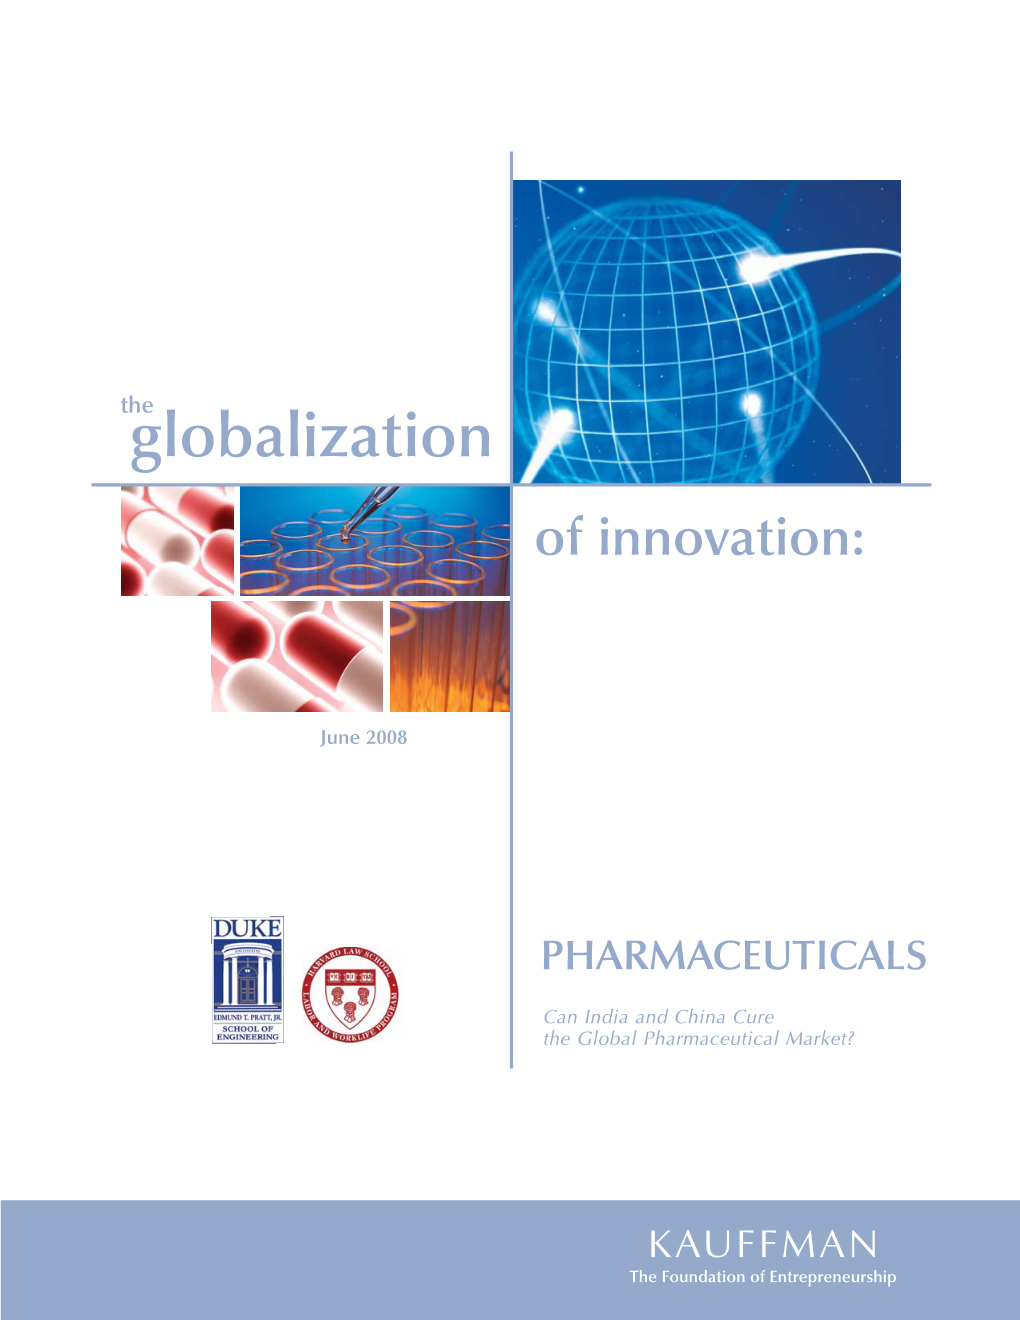 Global Pharma 3.Indd